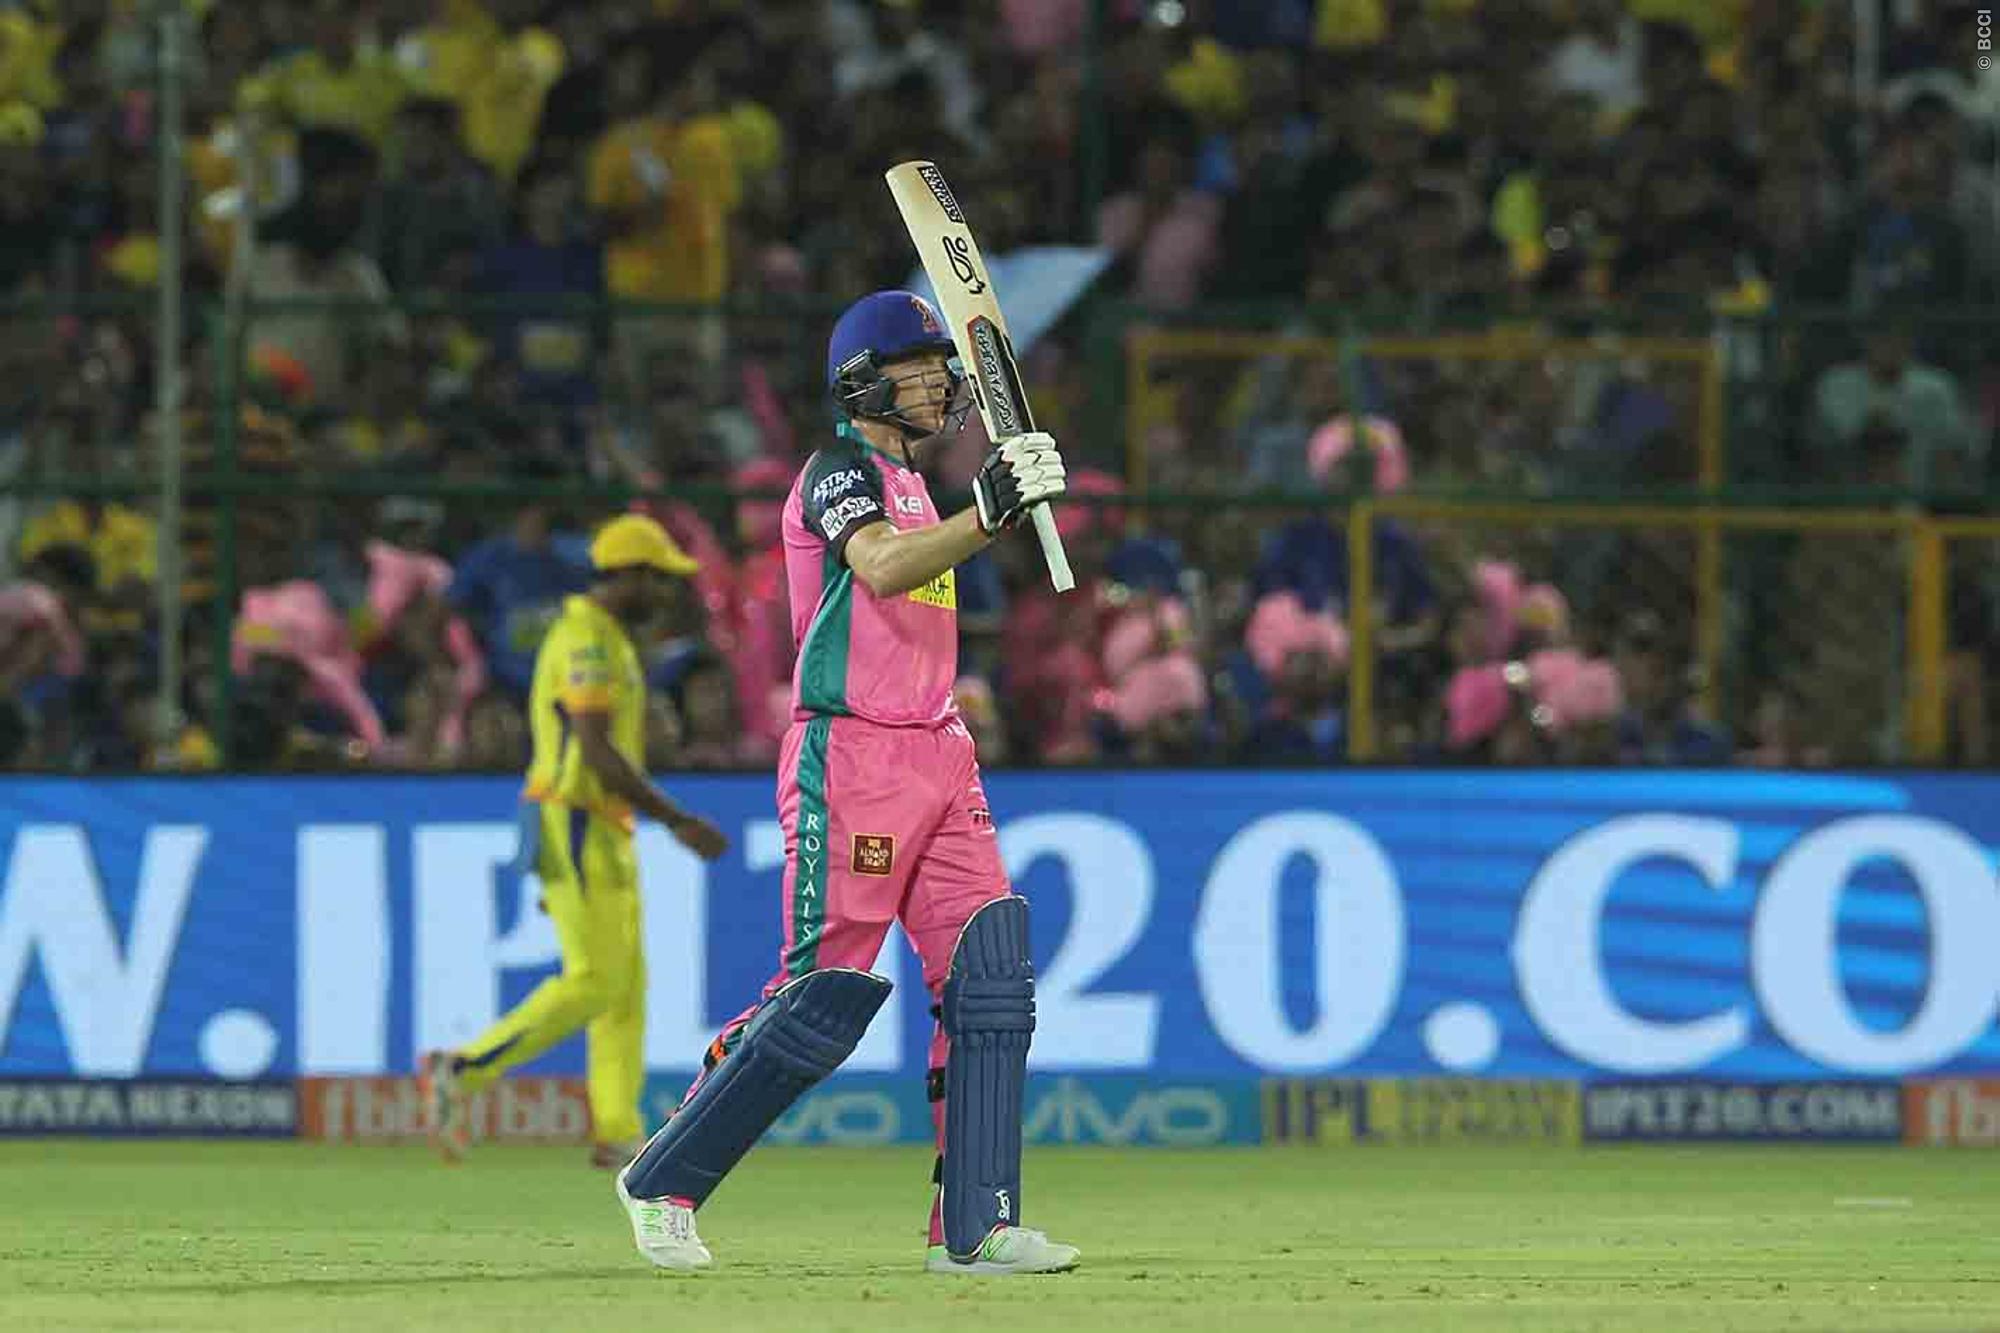 IPL 2018: जोस बटलर ने खेली 95 रनों की पारी तो खतरे में पड़ा सहवाग का सबसे बड़ा आईपीएल रिकॉर्ड 1